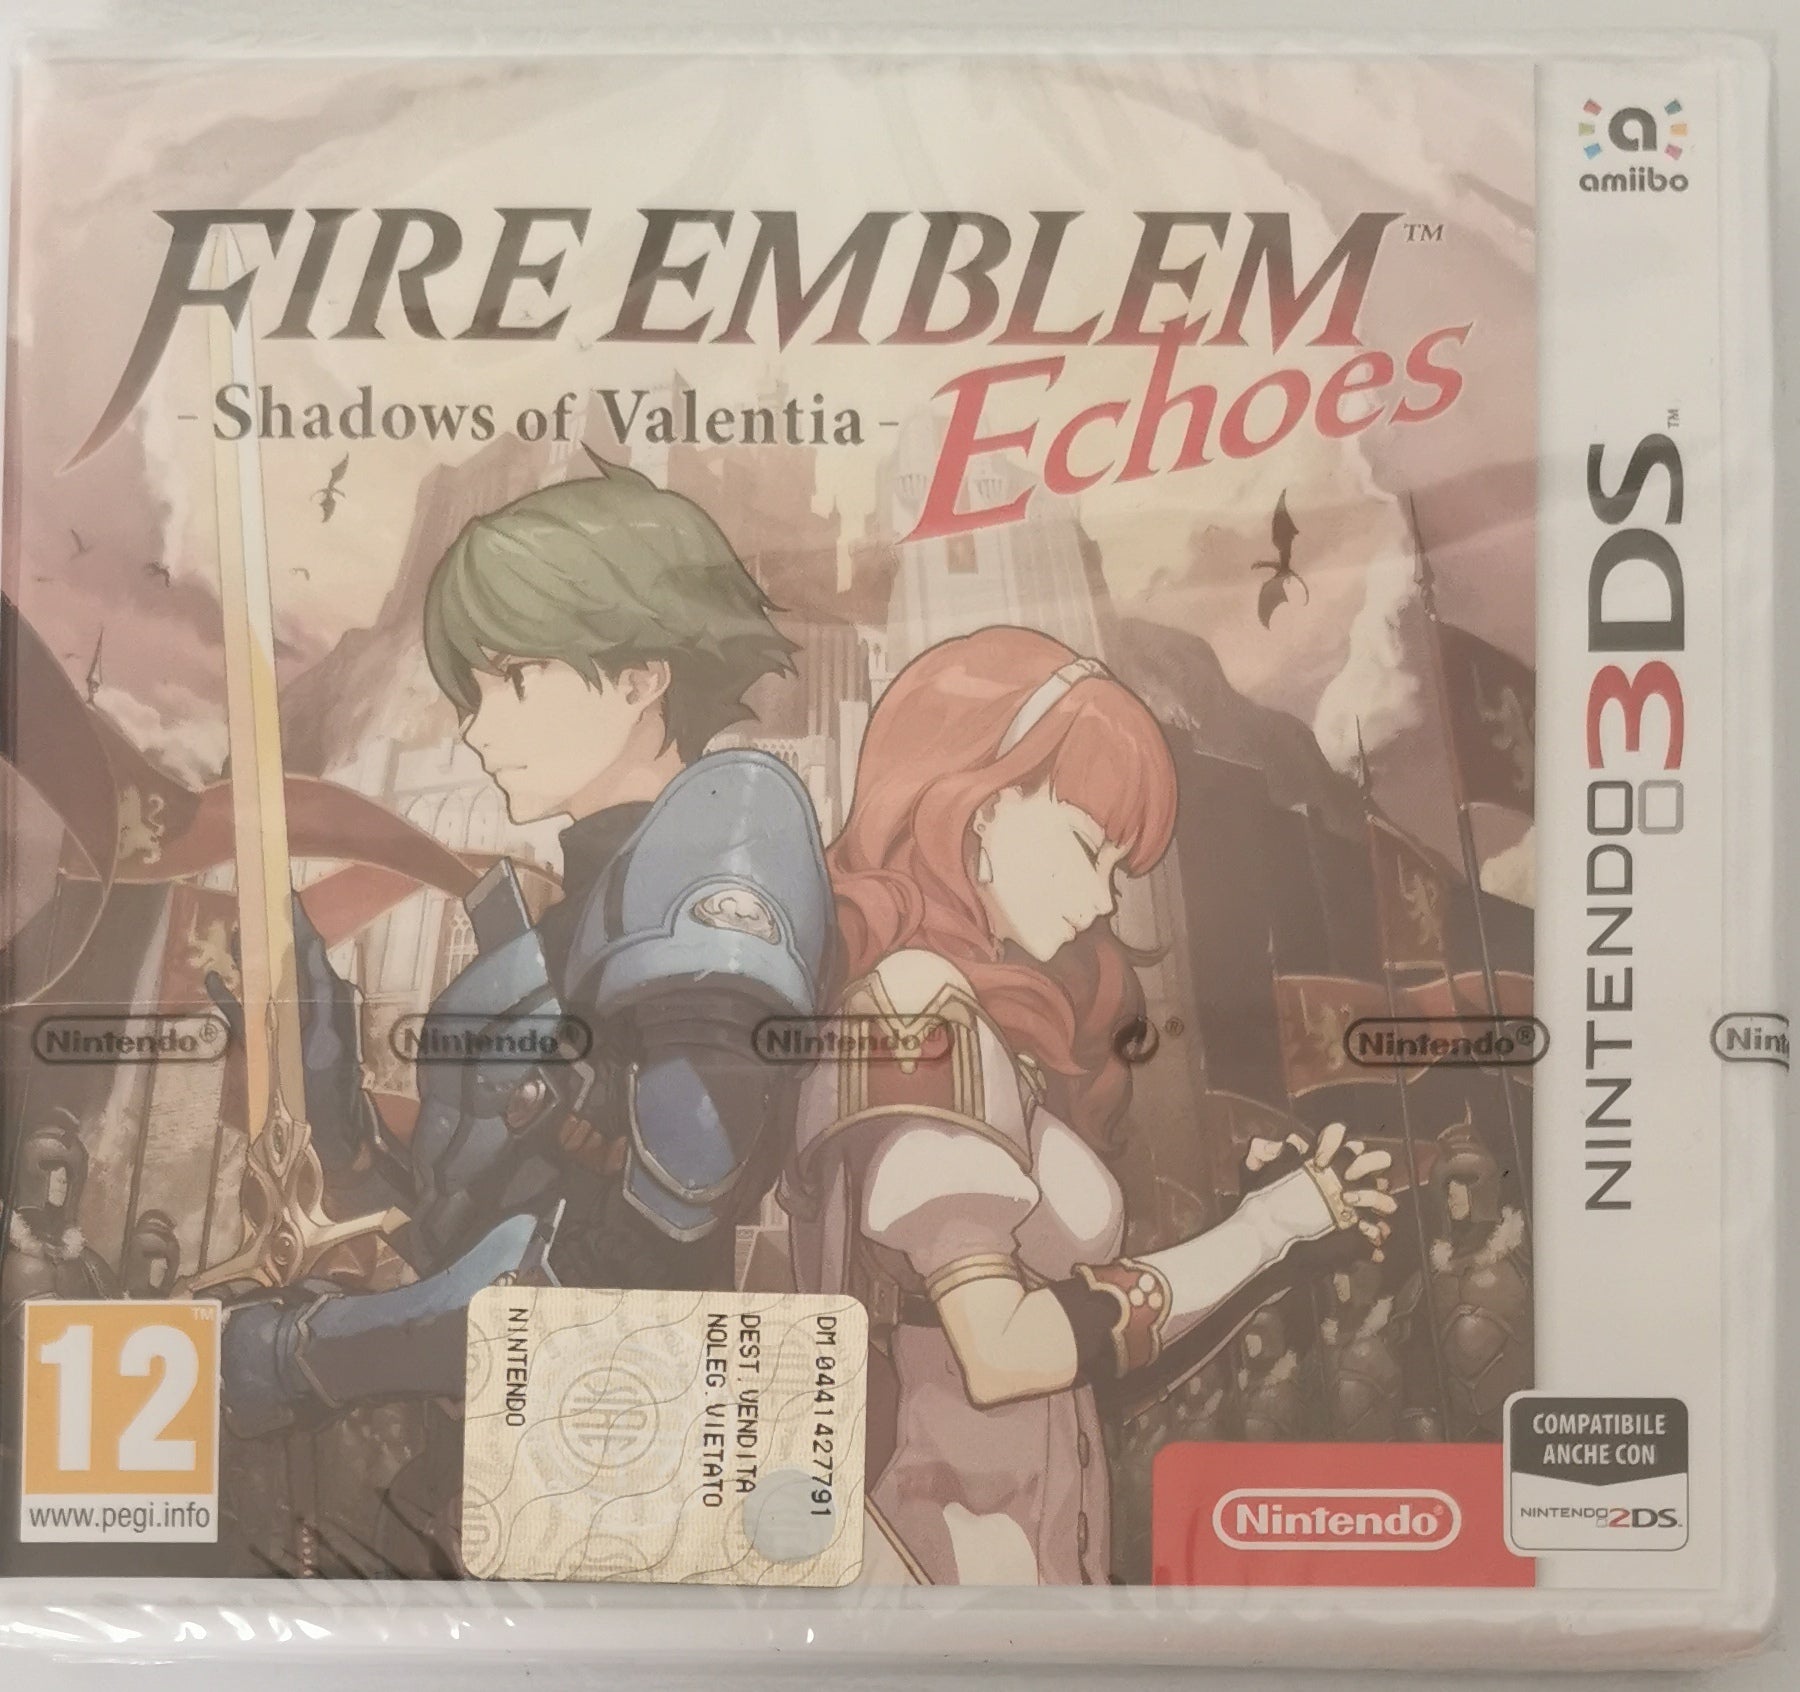 Giochi per Console Nintendo Fire Emblem Echoes Shadows of Valentia (Nintendo 3DS) [Neu]